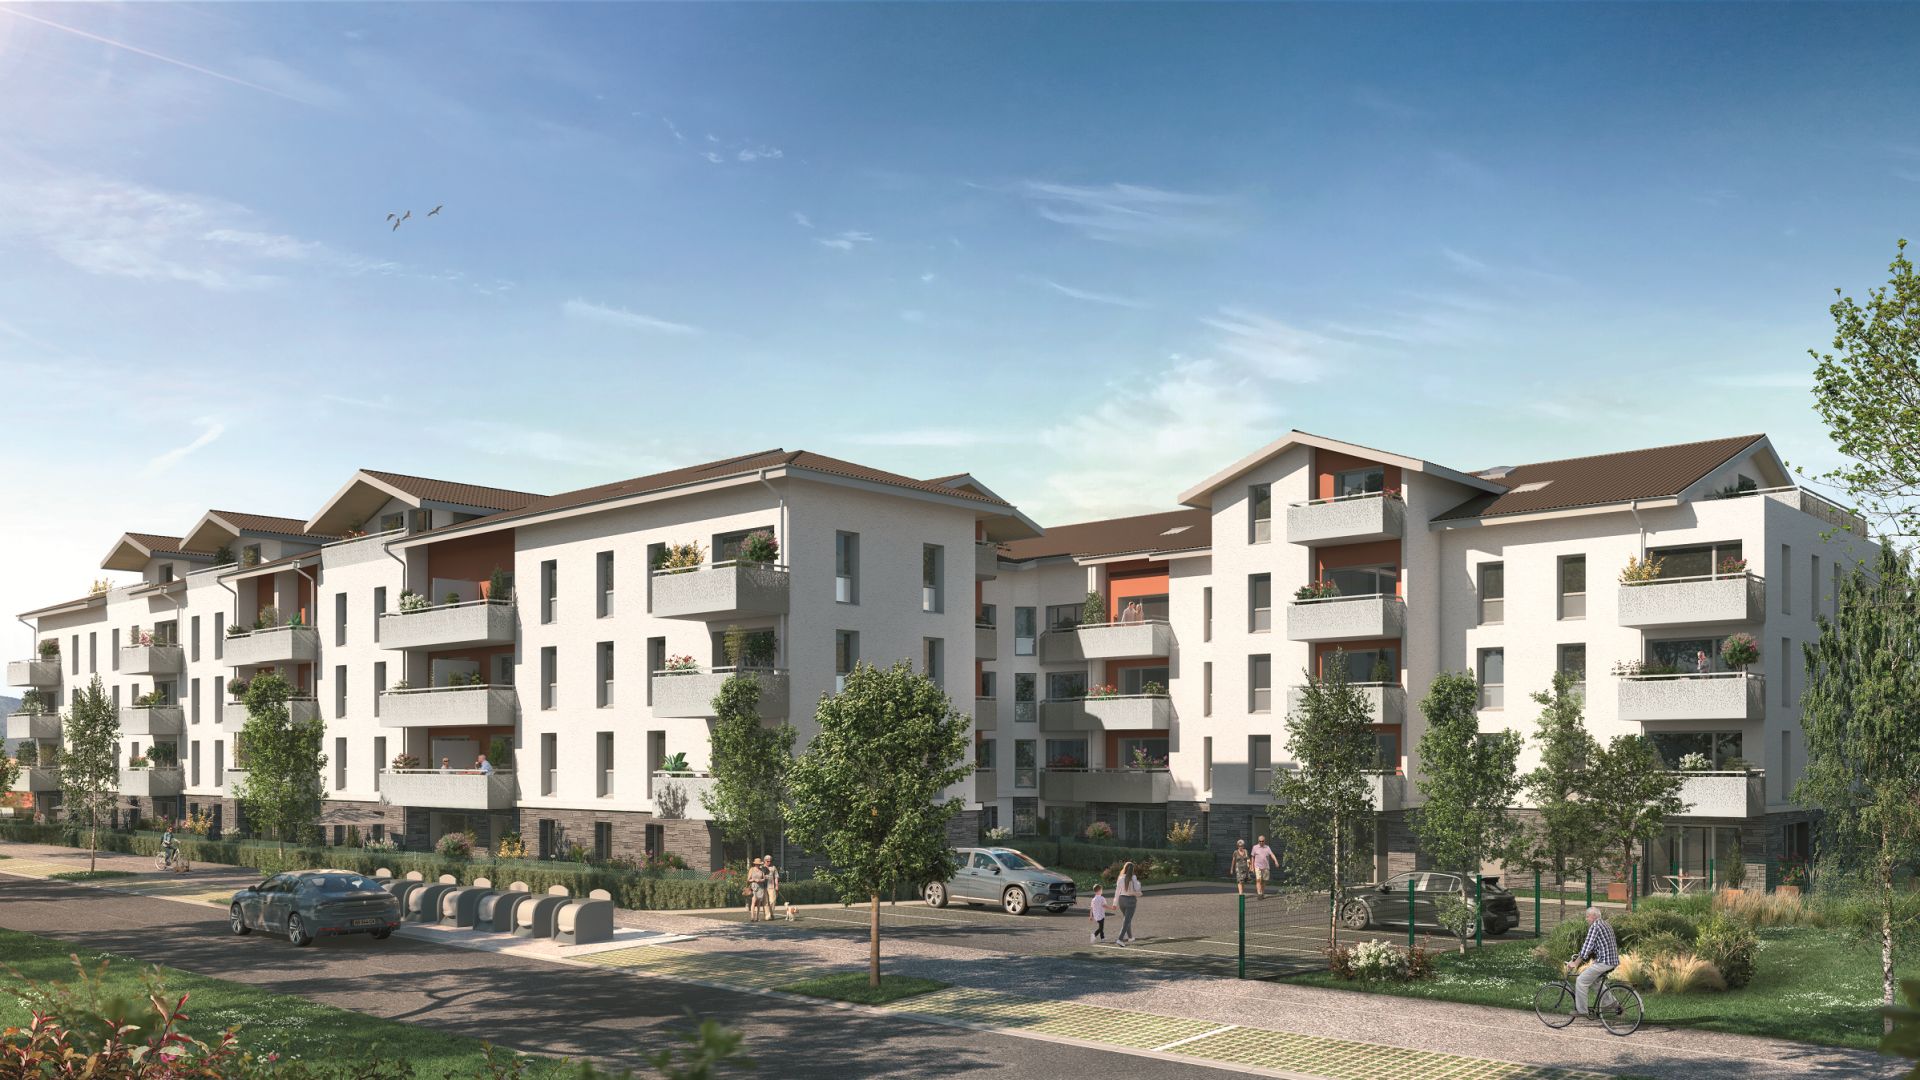 Greencity immobilier - achat appartements neufs du T2 au T3 - Résidence séniors - Les Villages d'Or Cessy - 01170 Cessy